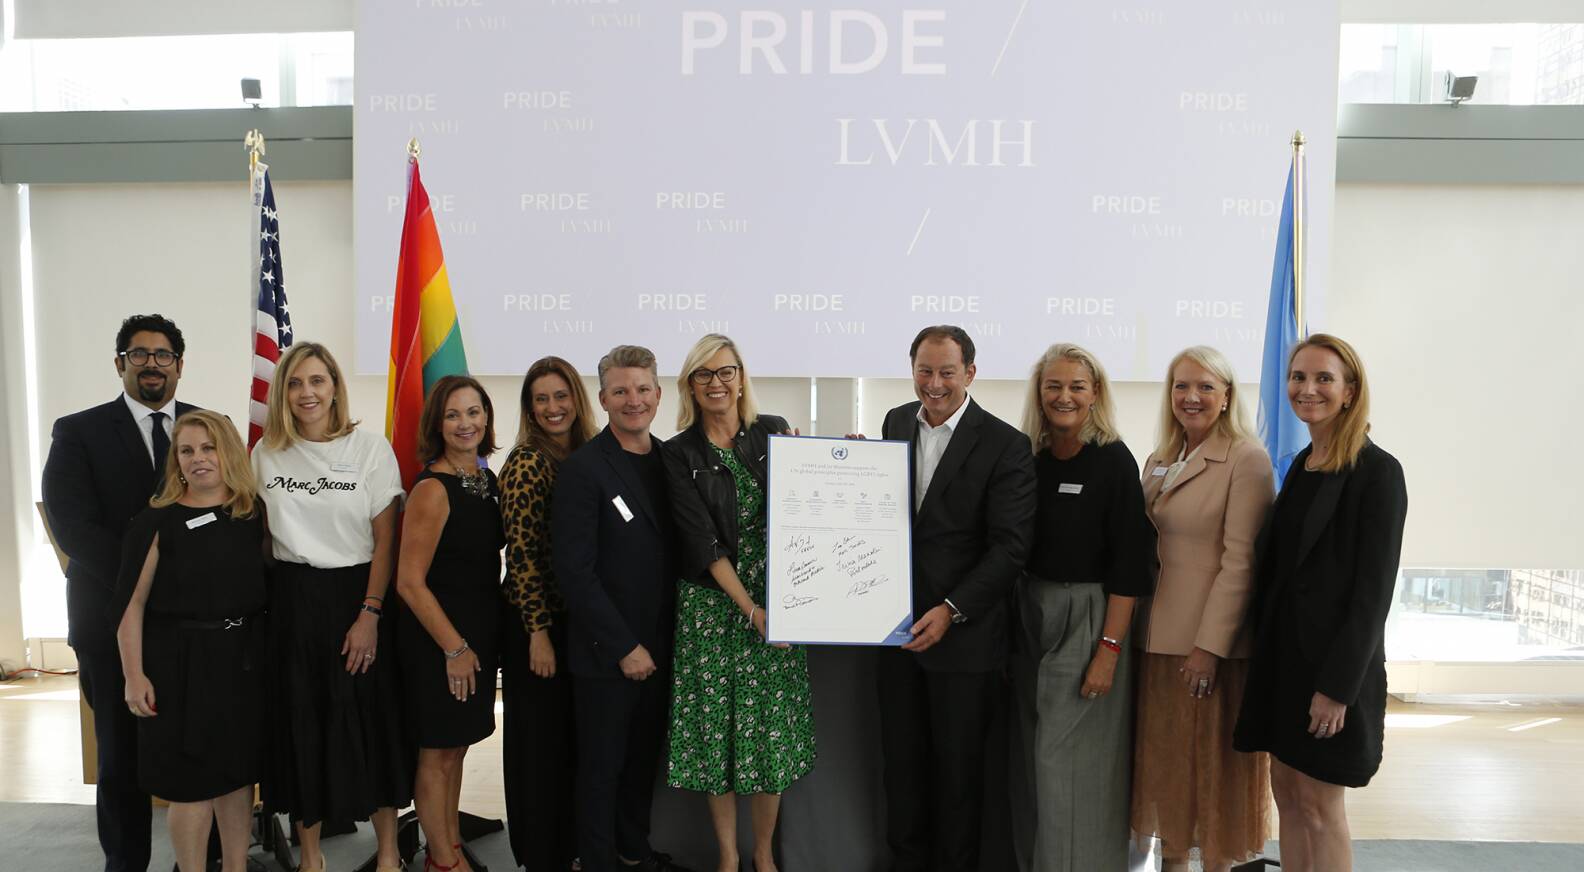 Le Maison di LVMH con sede negli Stati Uniti sottoscrivono gli standard di  condotta aziendale delle Nazioni Unite contro la discriminazione delle  persone LGBTI+ - LVMH